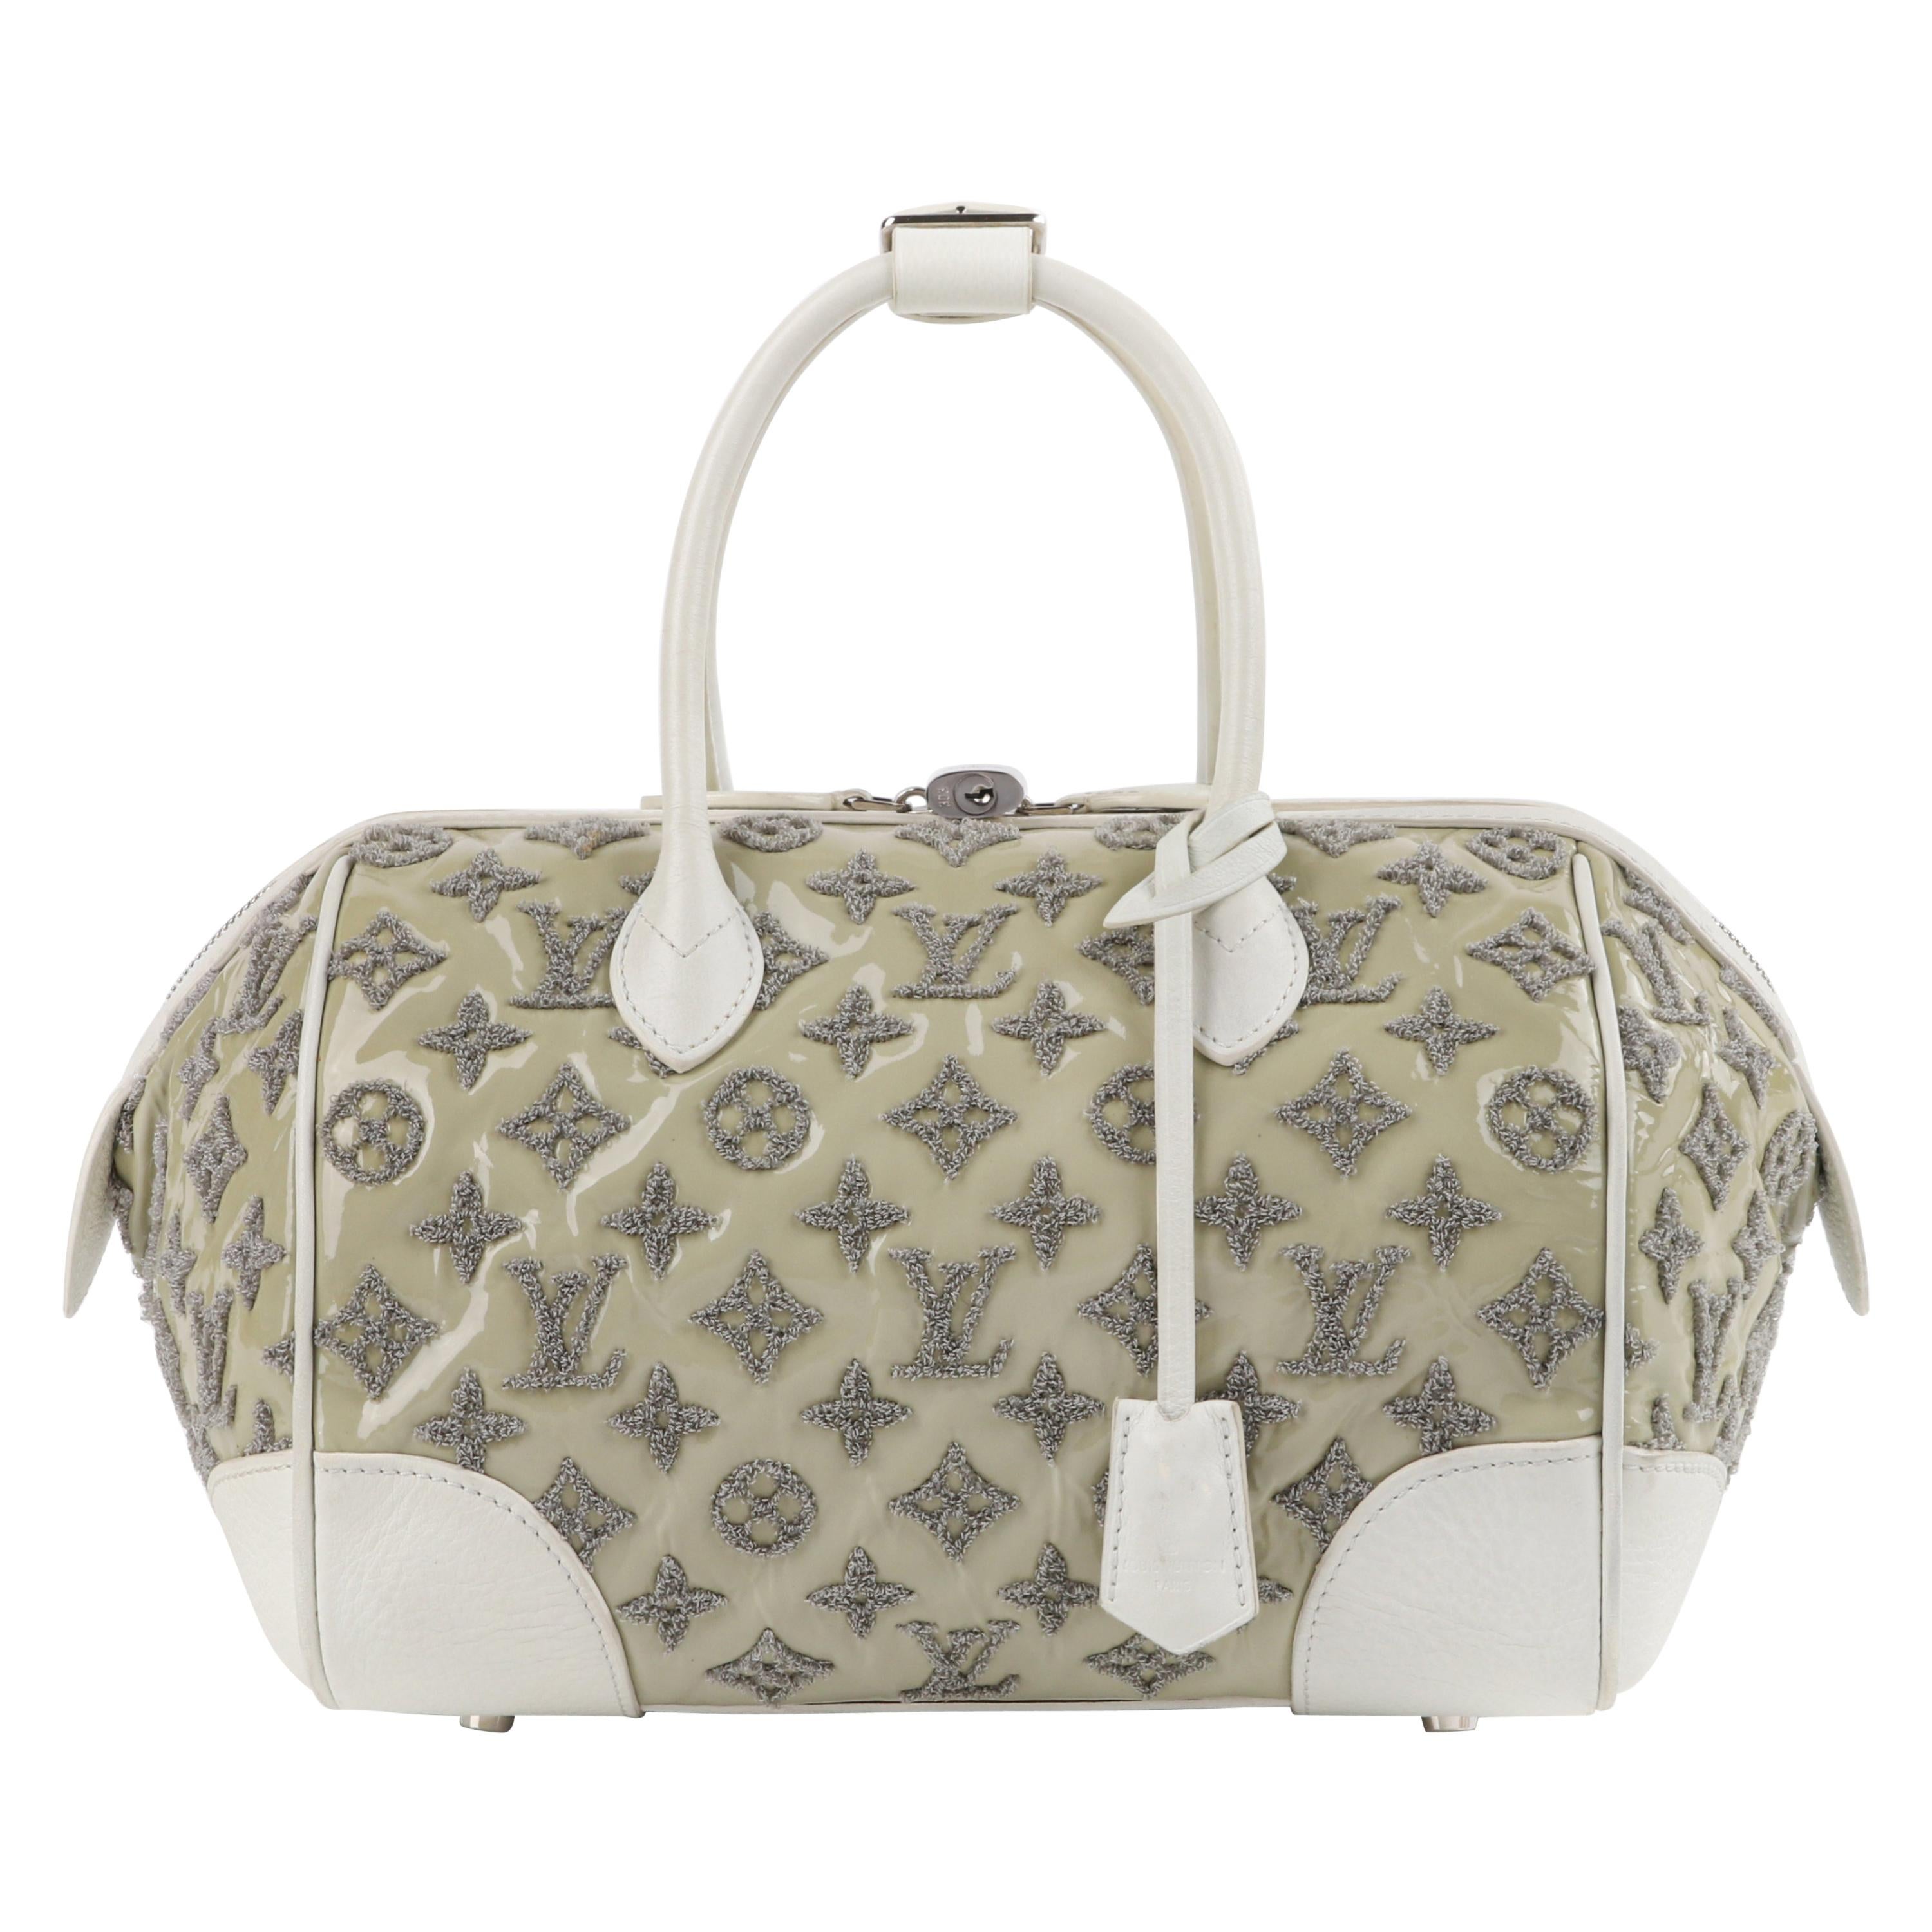 LOUIS VUITTON S/S 2012 Taupe White Boucle Knit Monogram “Speedy Round” Handbag